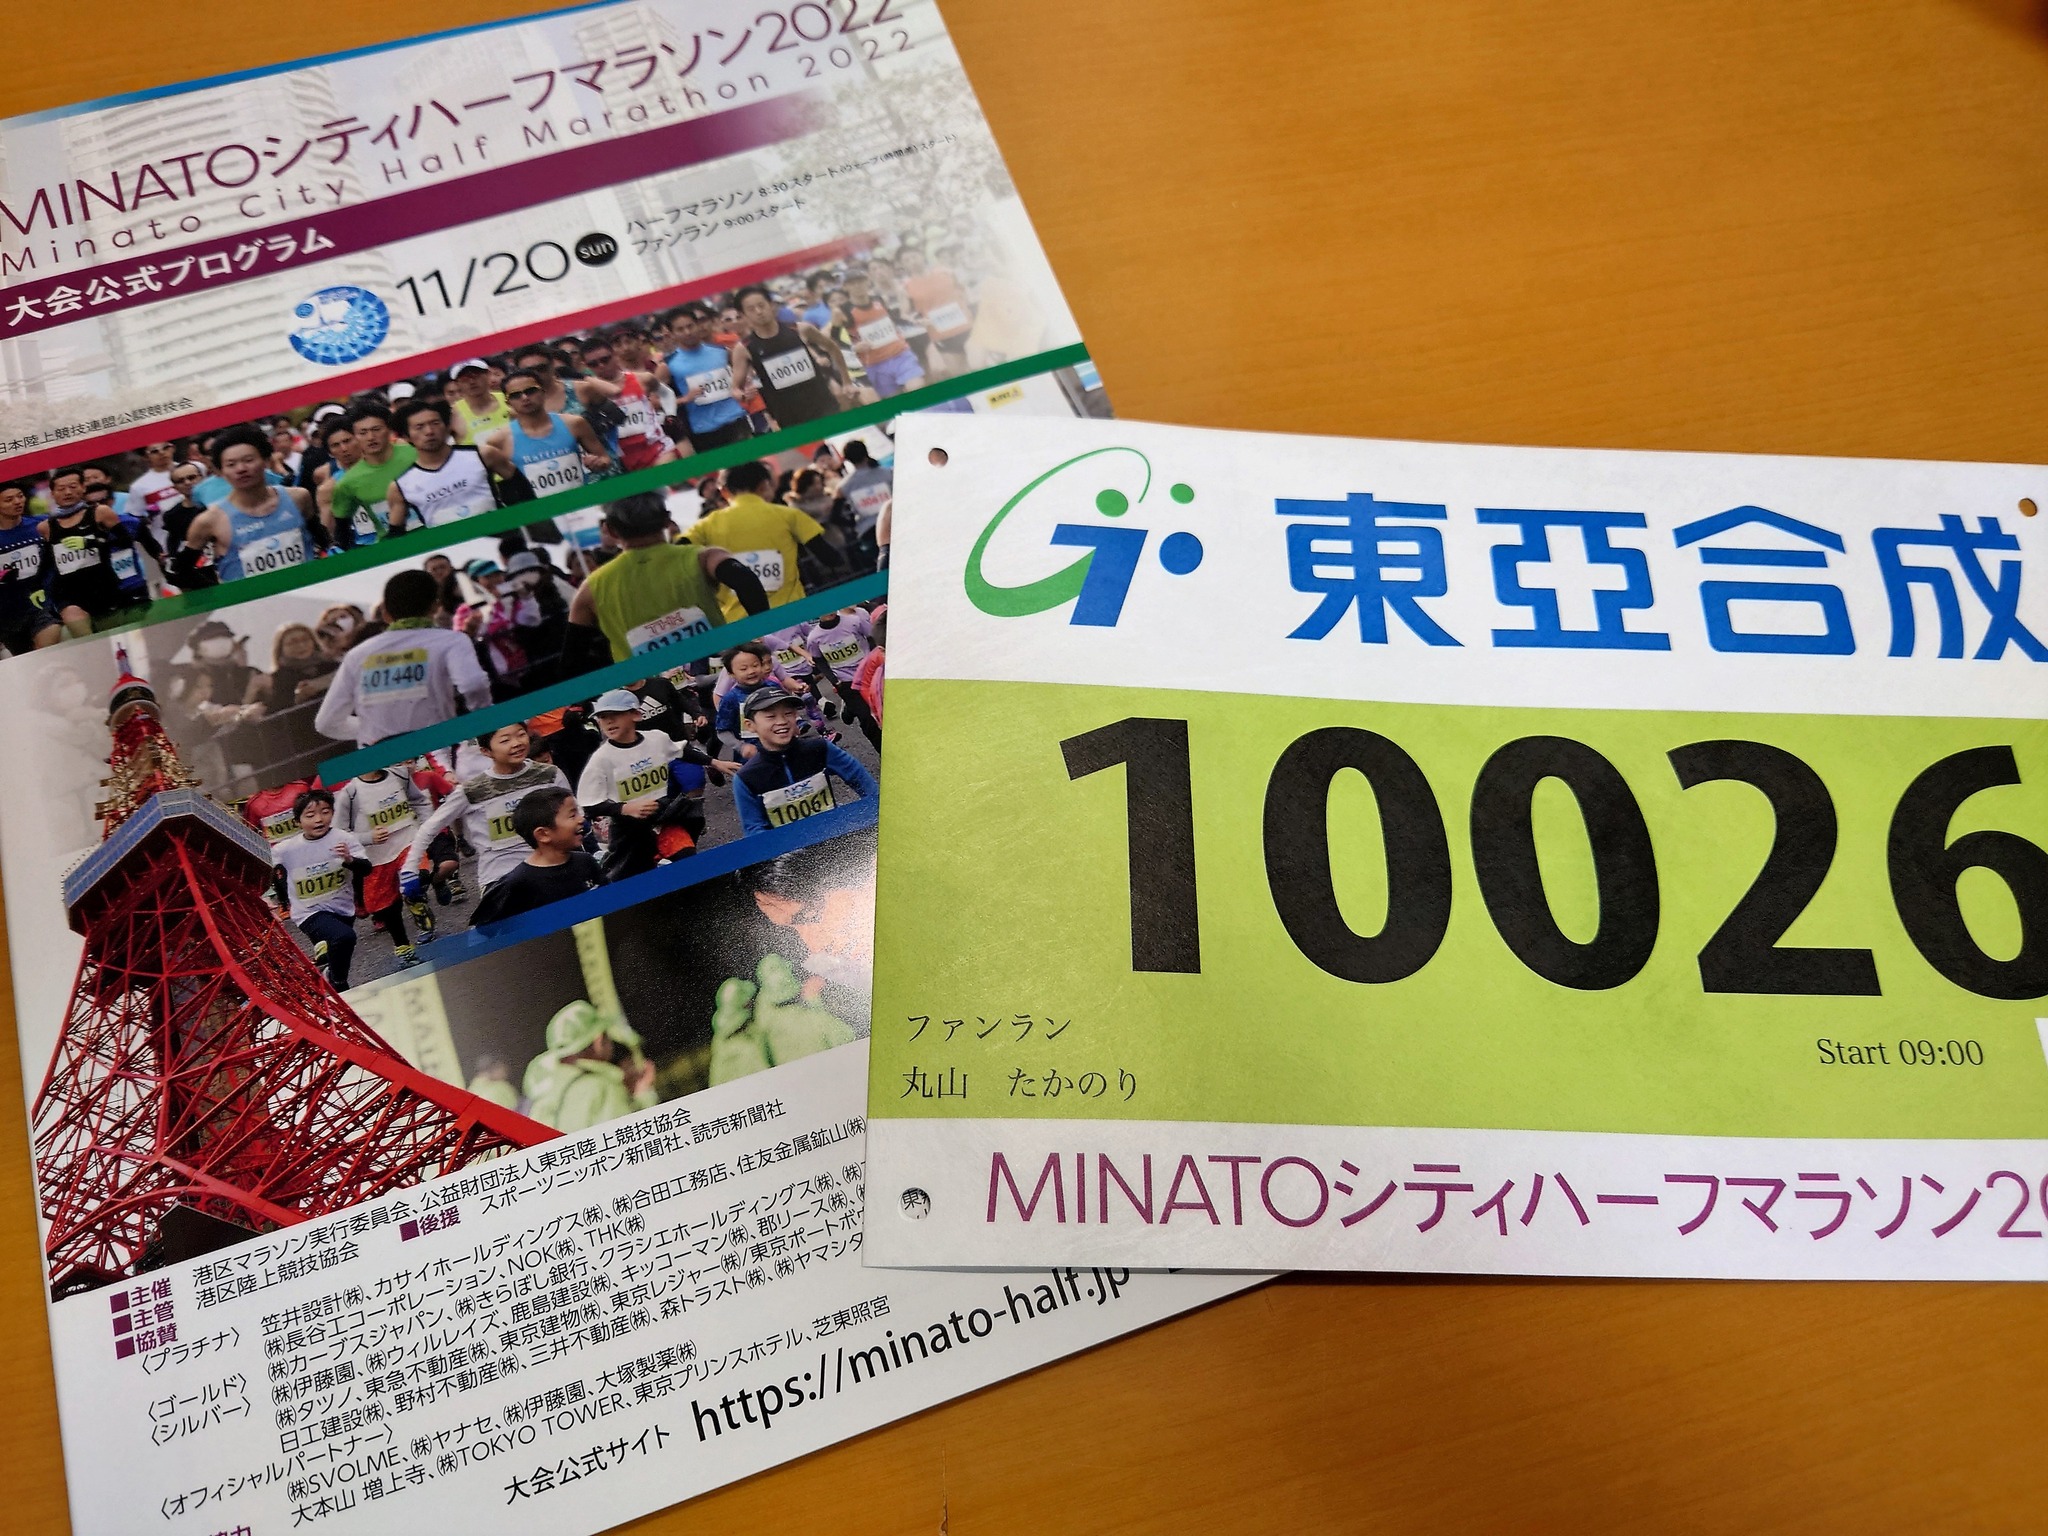 【2022年11月8日】MINATOシティハーフマラソン概要など報告が